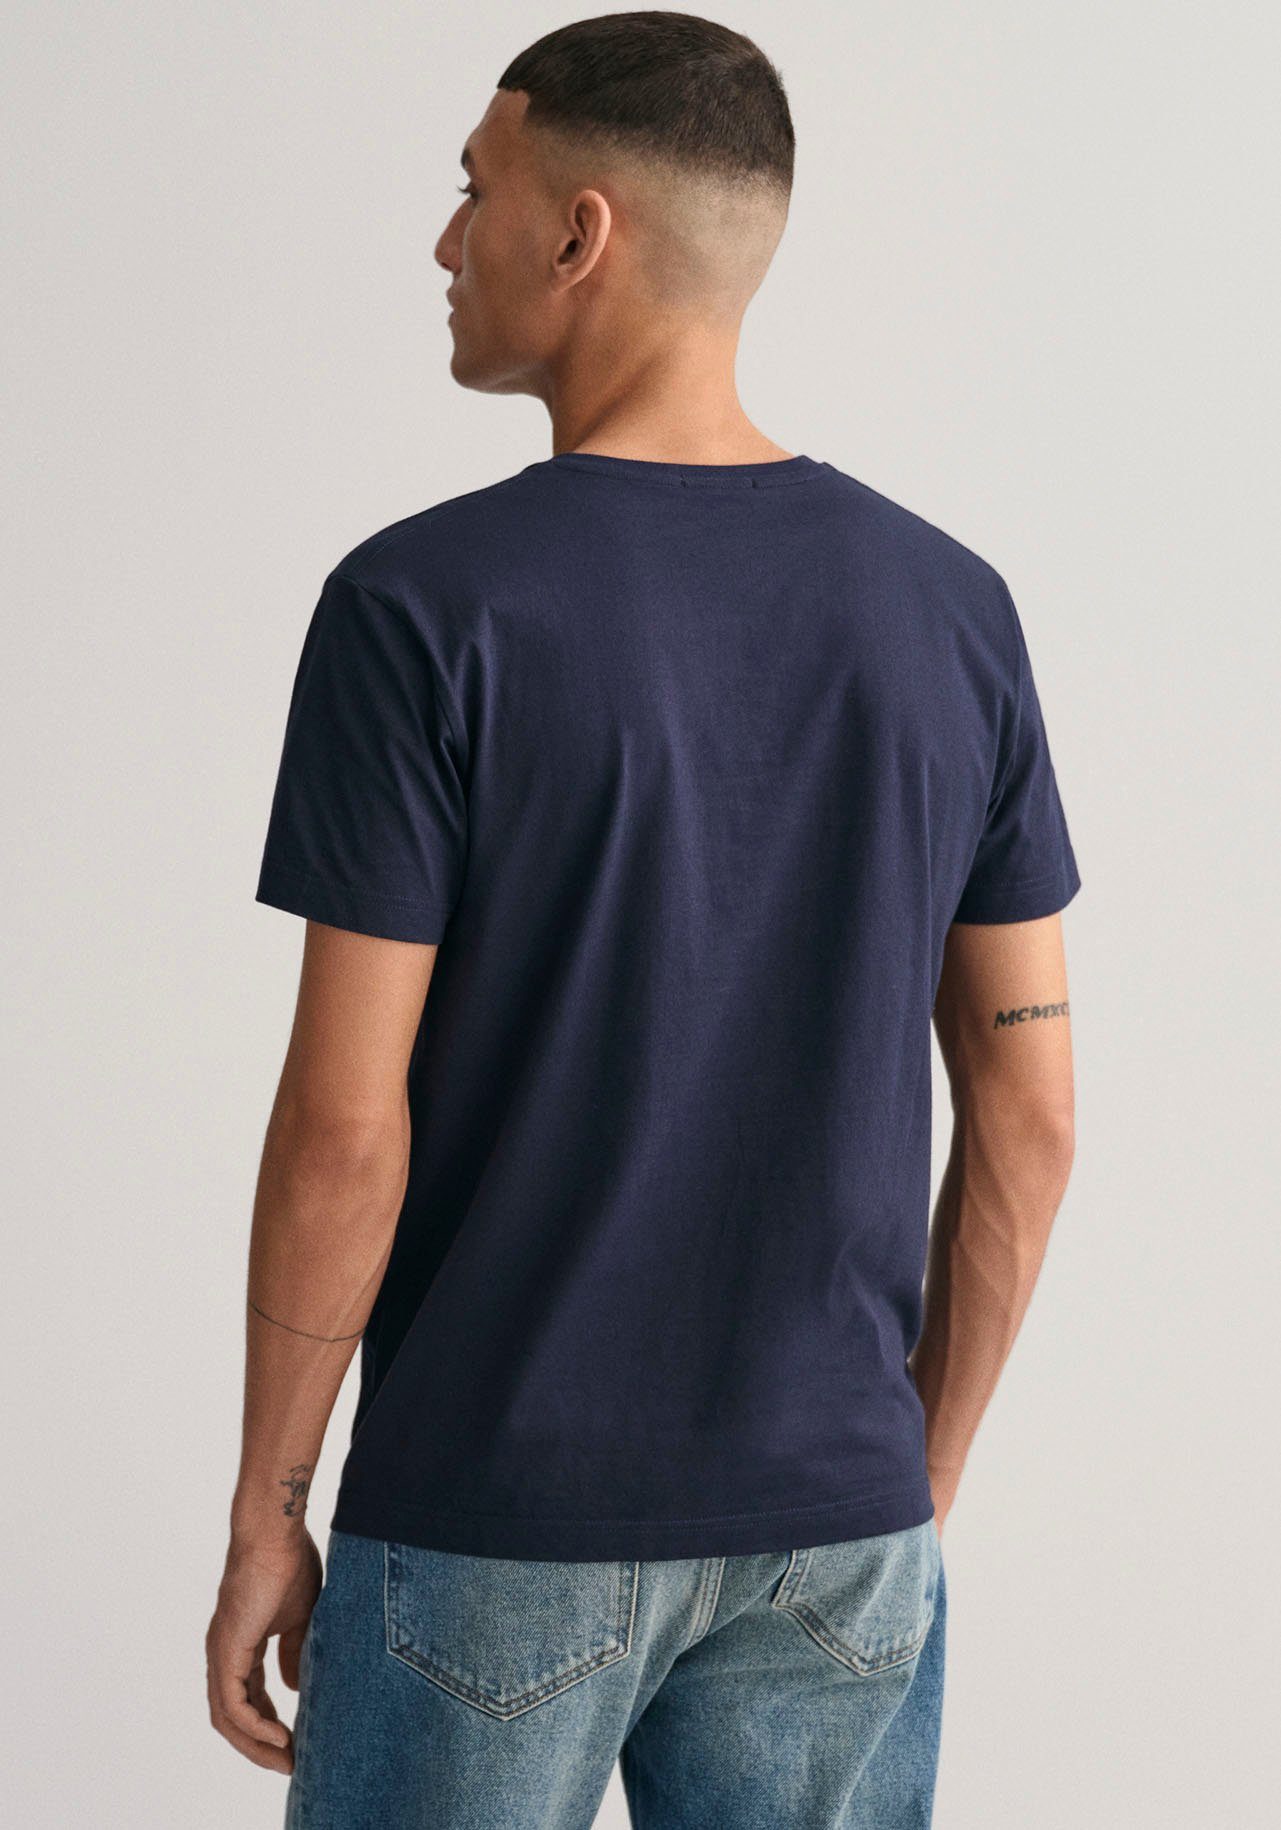 mit einer Evening Brust Gant T-SHIRT V-NECK kleinen auf SHIELD der T-Shirt Logostickerei SLIM blue